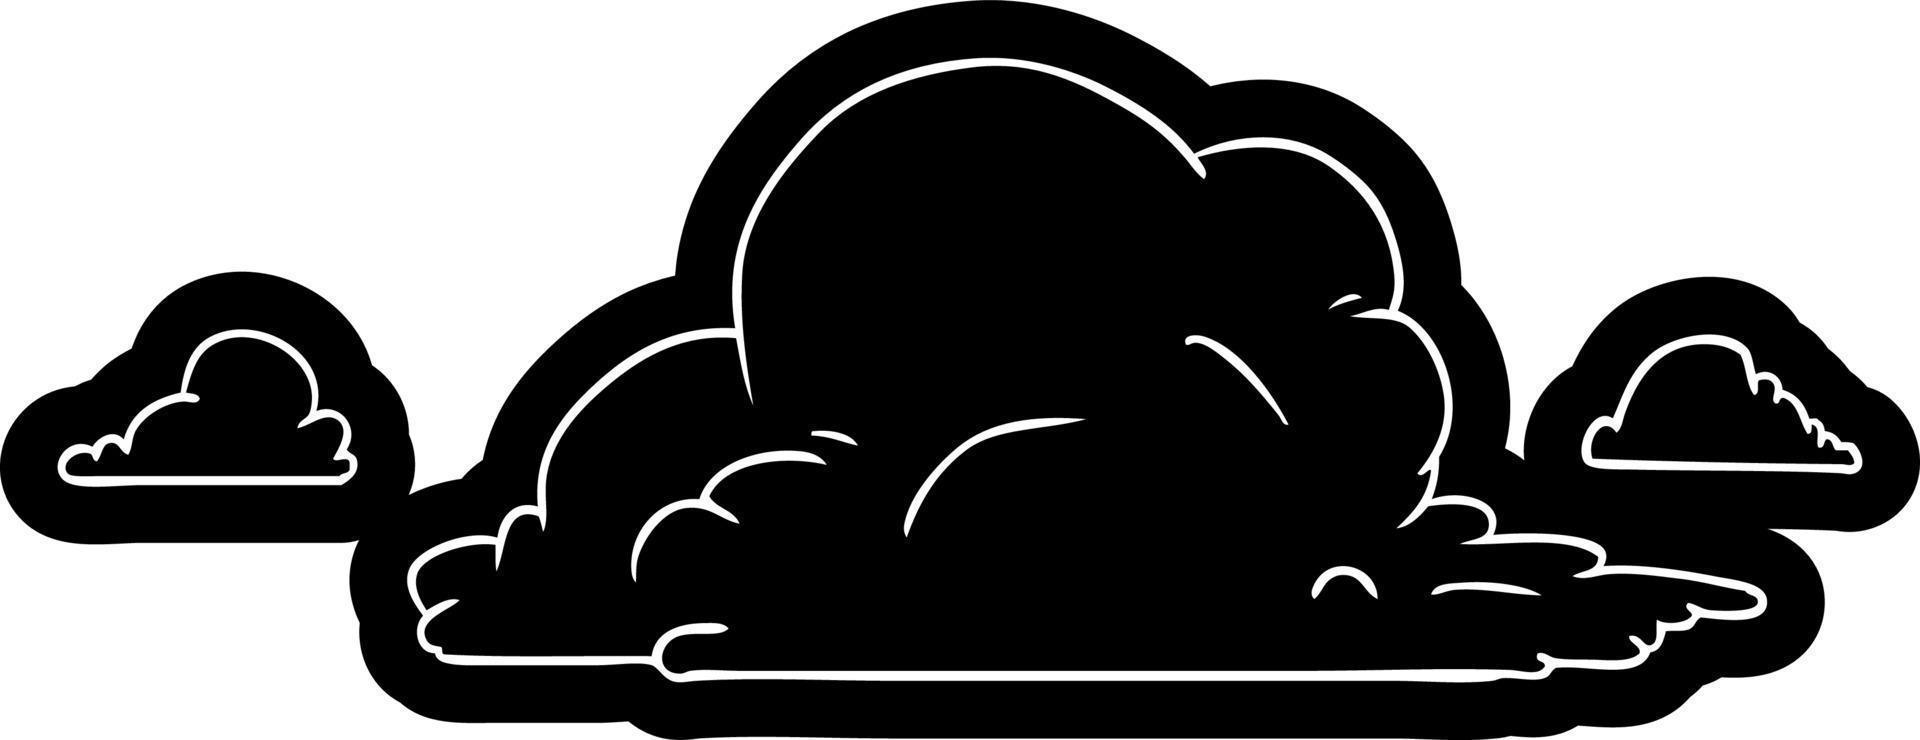 icona del fumetto disegno di grandi nuvole bianche vettore